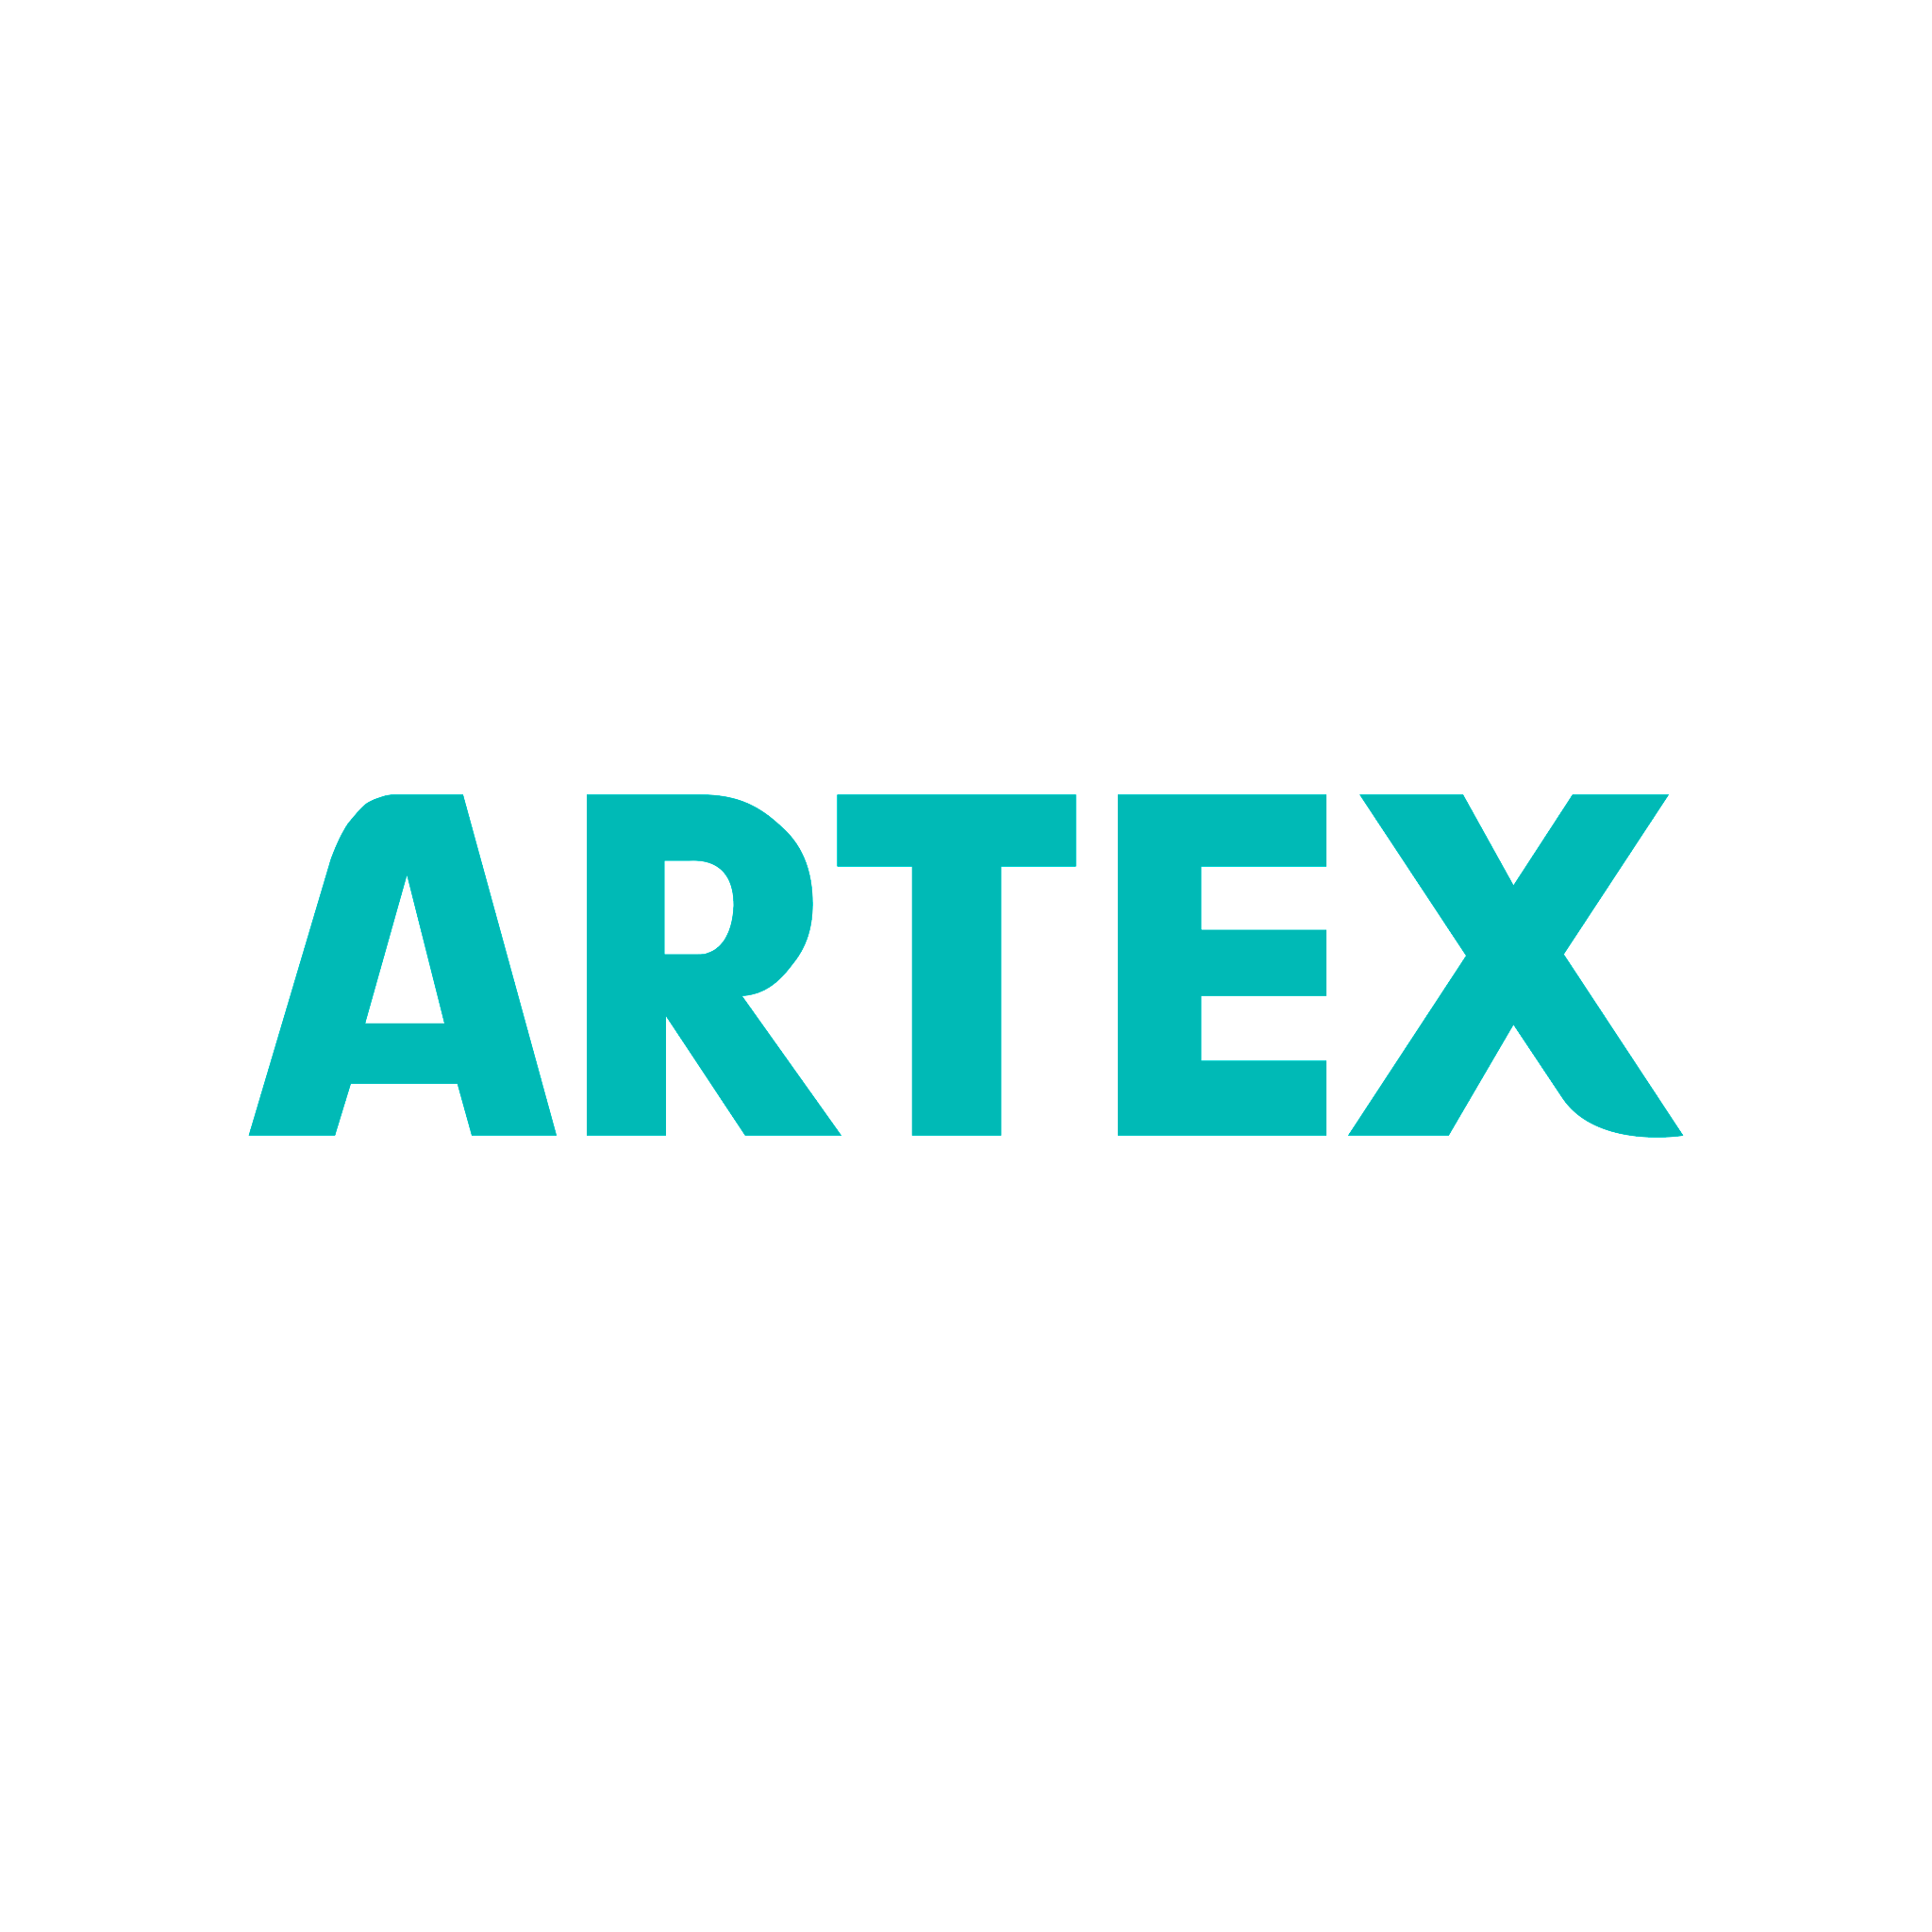 Artex